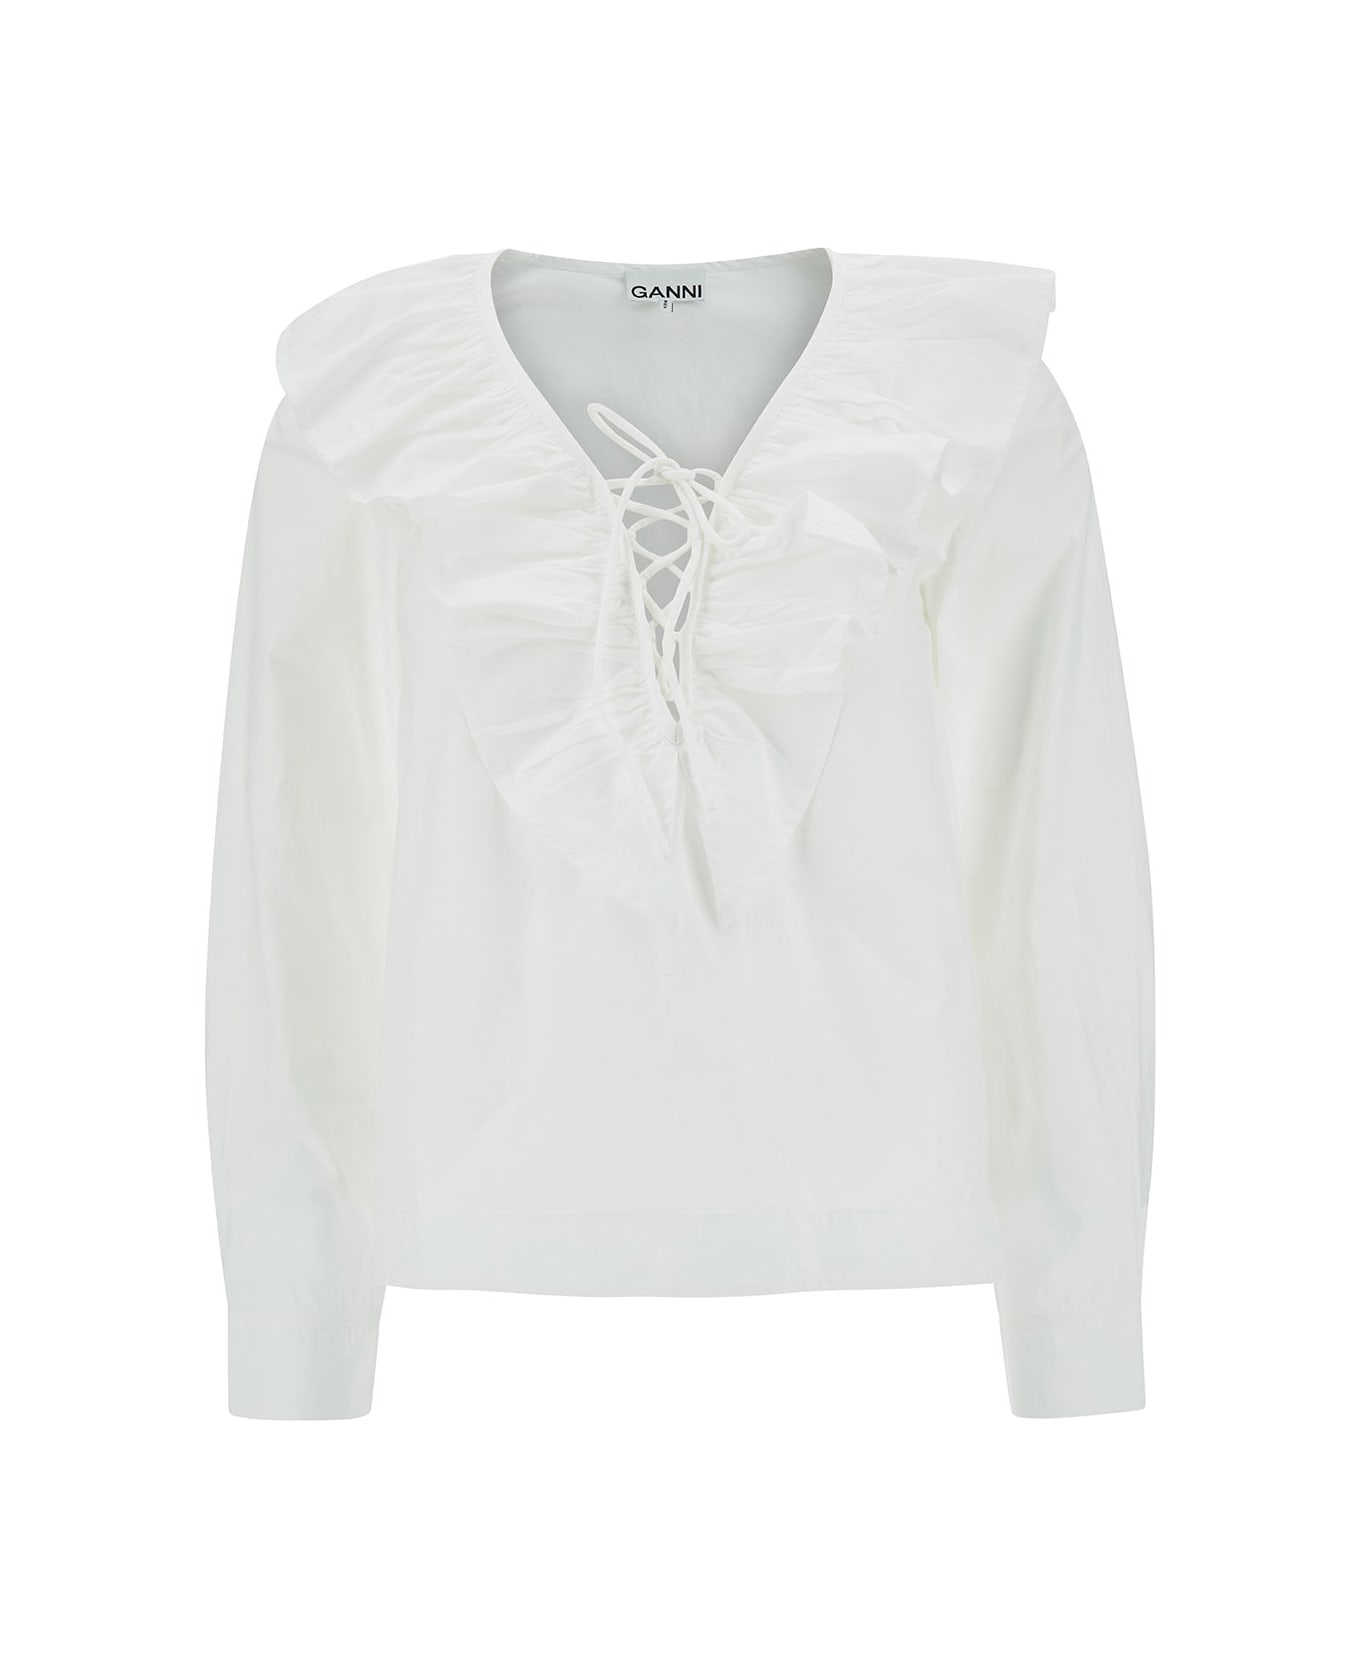 Ganni White Cotton Shirt - BRIGHT WHITE